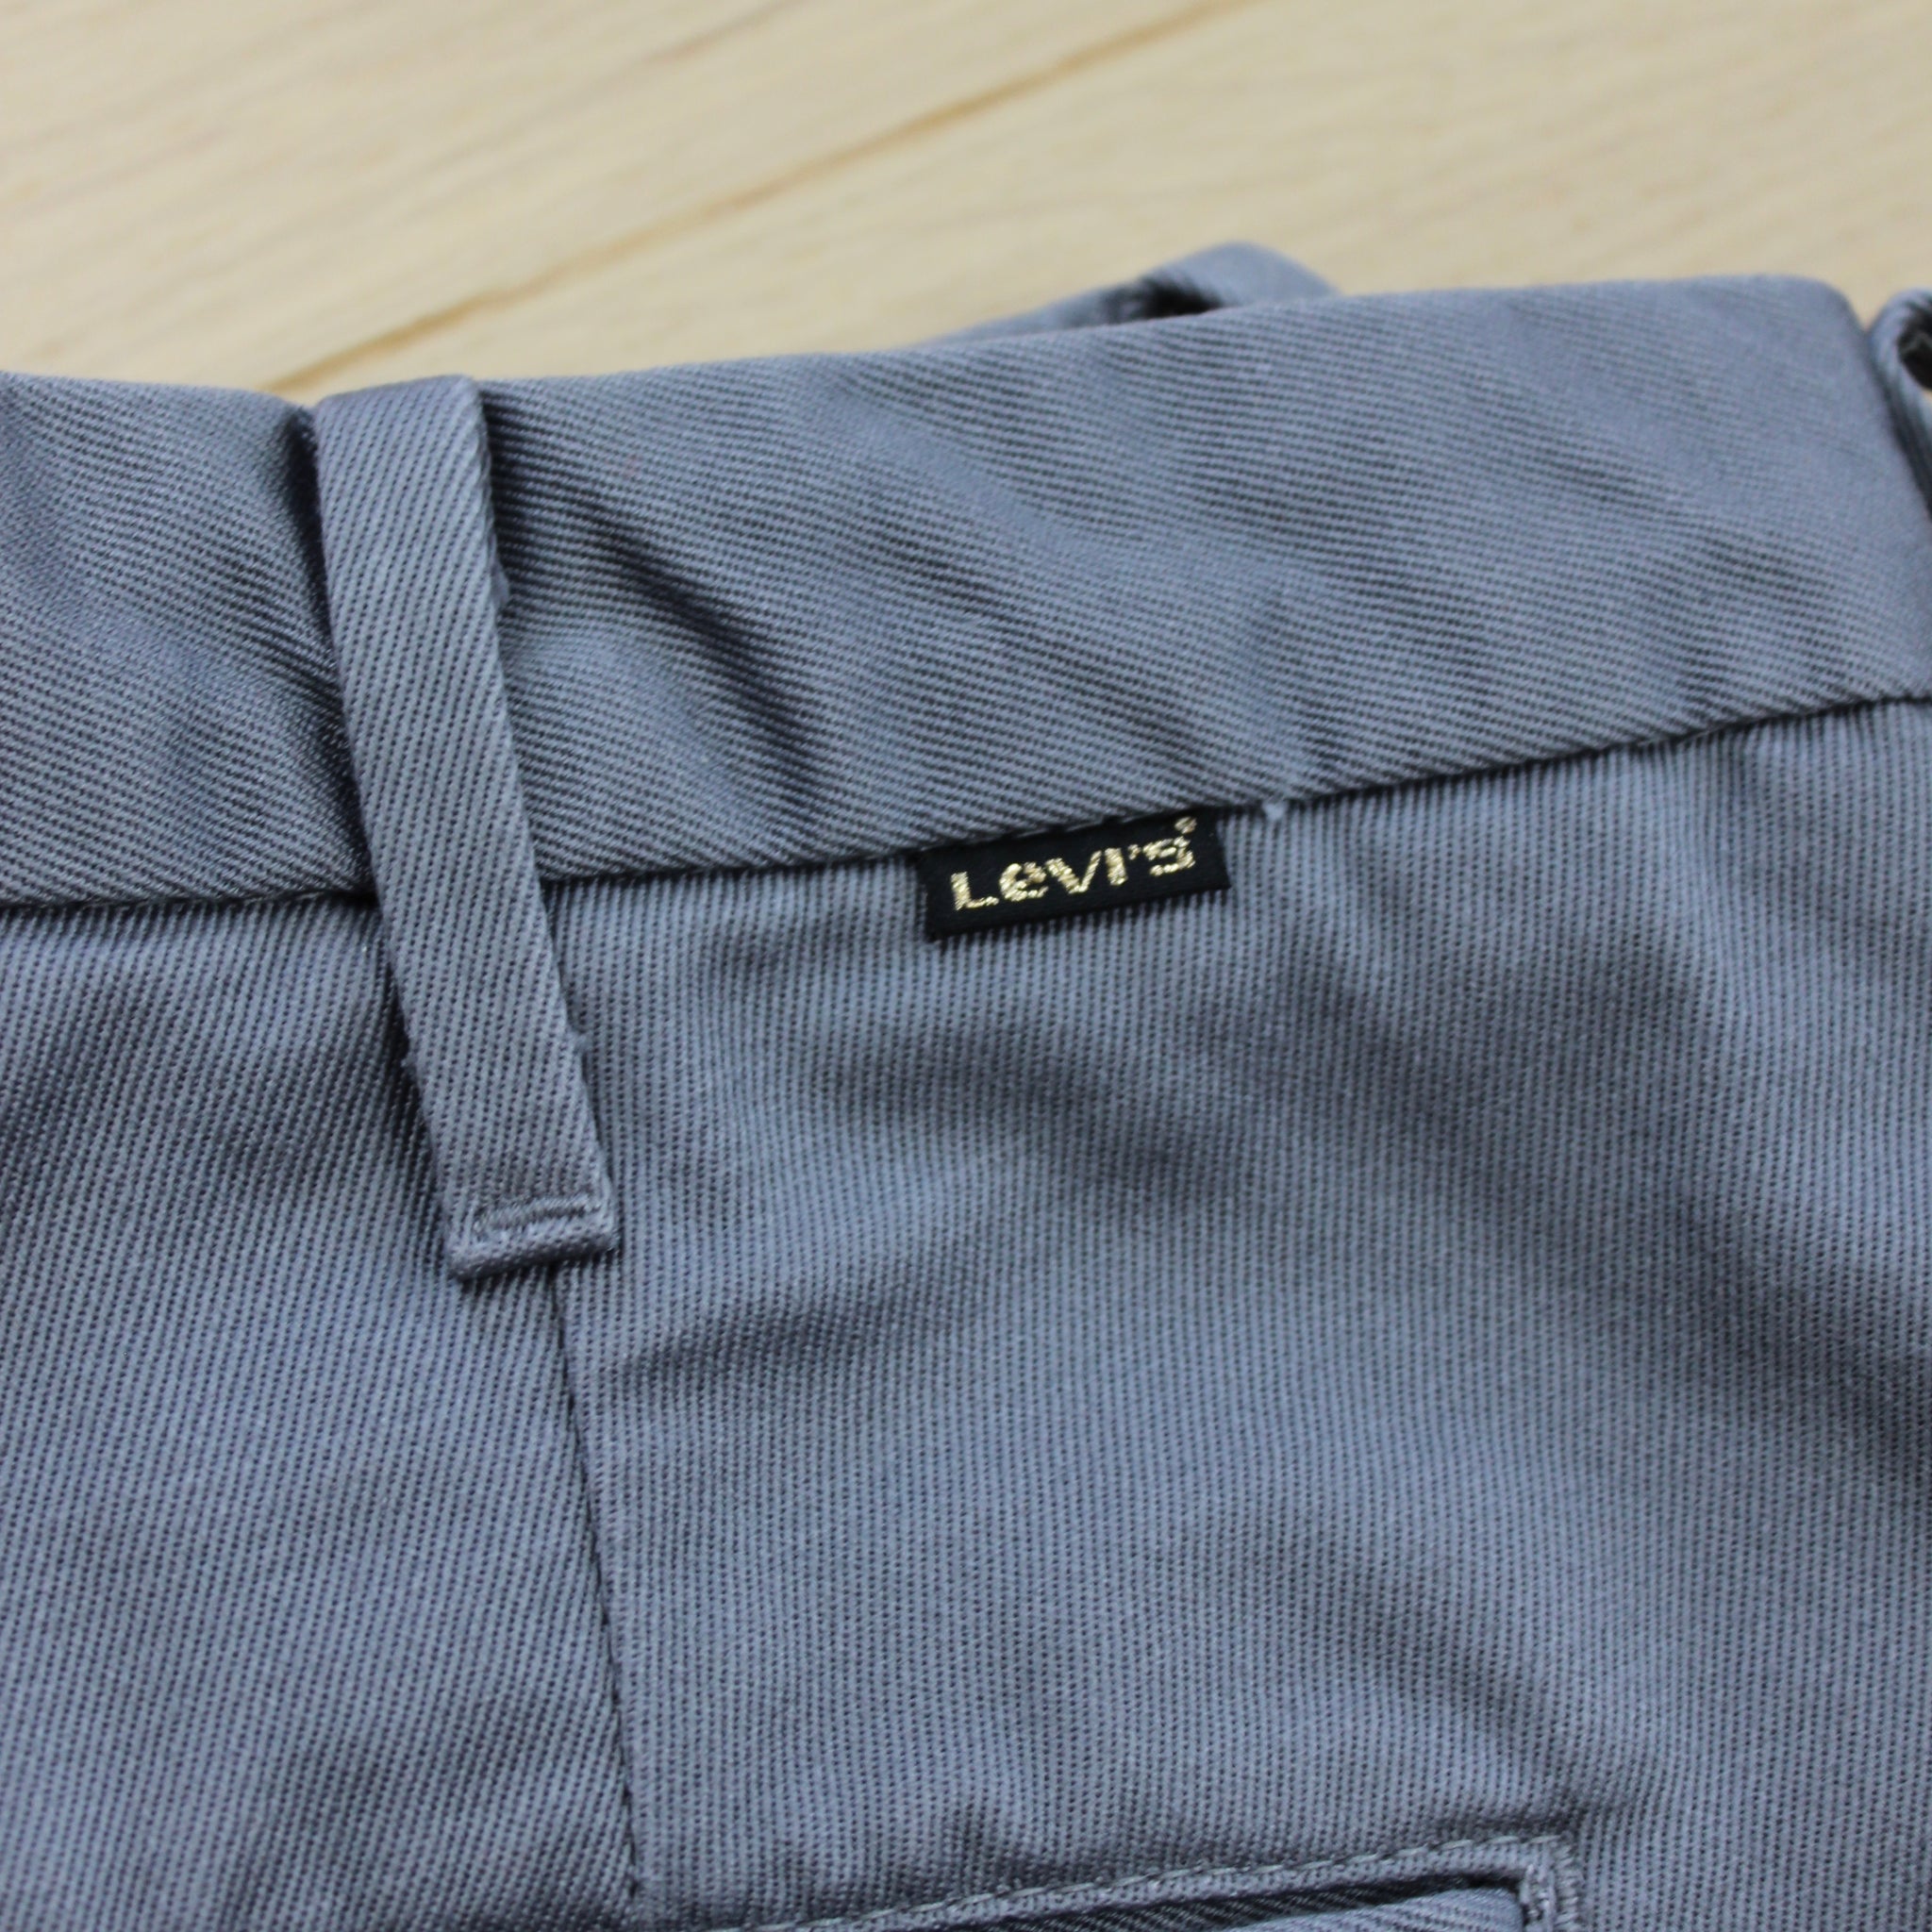 Vintage 70s Levi's Sta Prest Trousers 